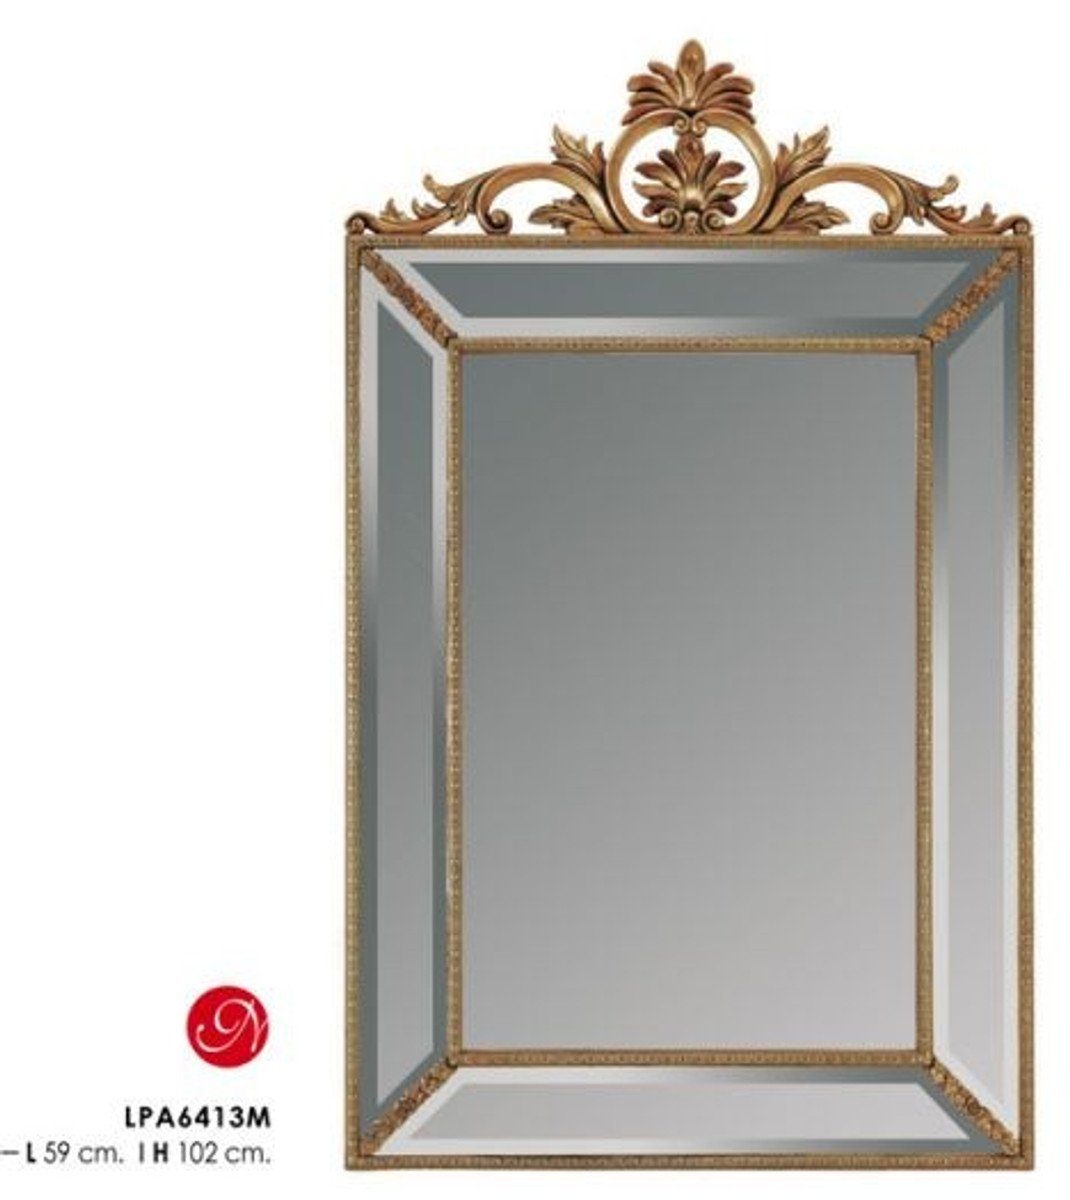 Casa Padrino Barockspiegel Barock Wandspiegel Gold H 102 cm, B 59 cm - Edel & Prunkvoll - Goldener Spiegel